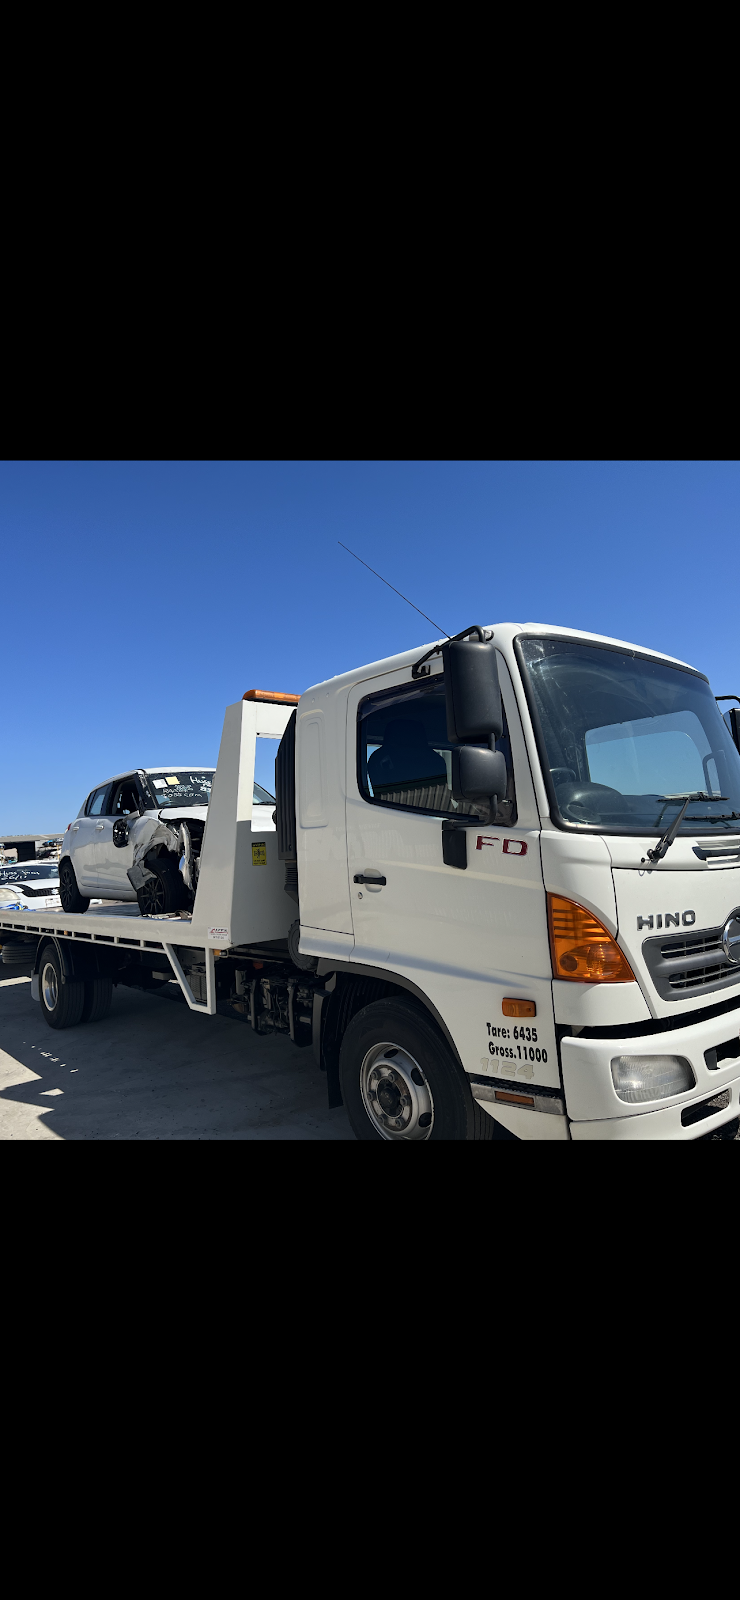 Sa towing & car removal | 60 Beadell St, Burton SA 5110, Australia | Phone: 0415 771 420